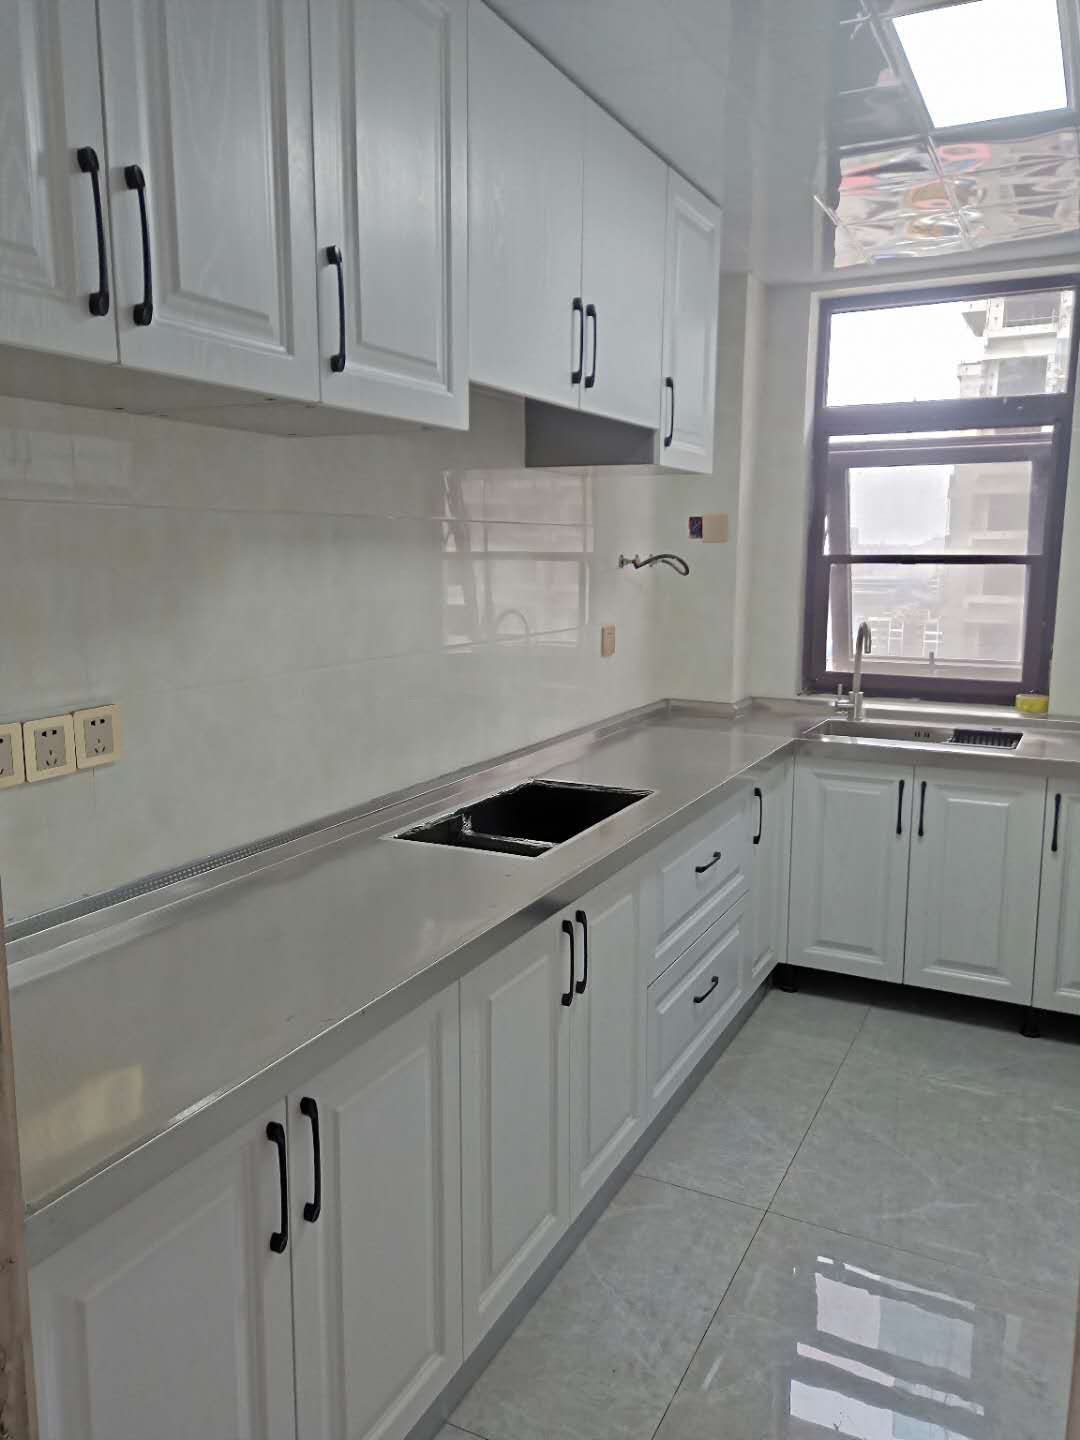 郑州定做定制不锈钢整体橱柜上门安装 整体不锈钢厨柜减少甲醛污染